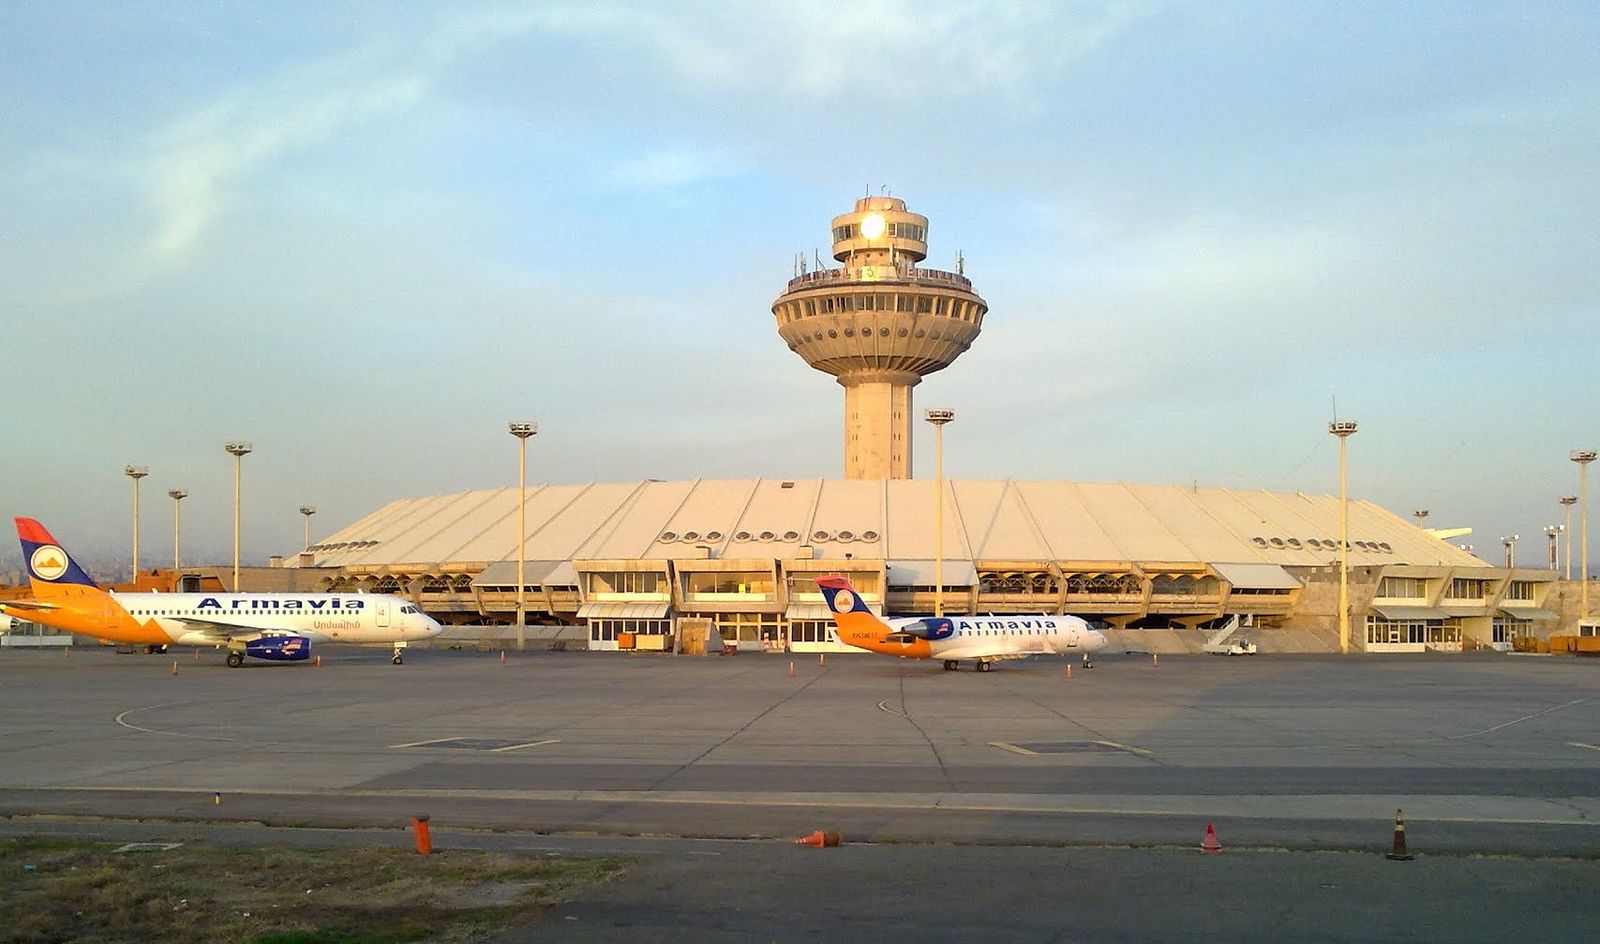 Сайт аэропорта звартноц. Аэропорт Армении Ереван. Международный аэропорт Звартноц. Армянский аэропорт Звартноц. Аэровокзал «Звартноц» в Ереване.